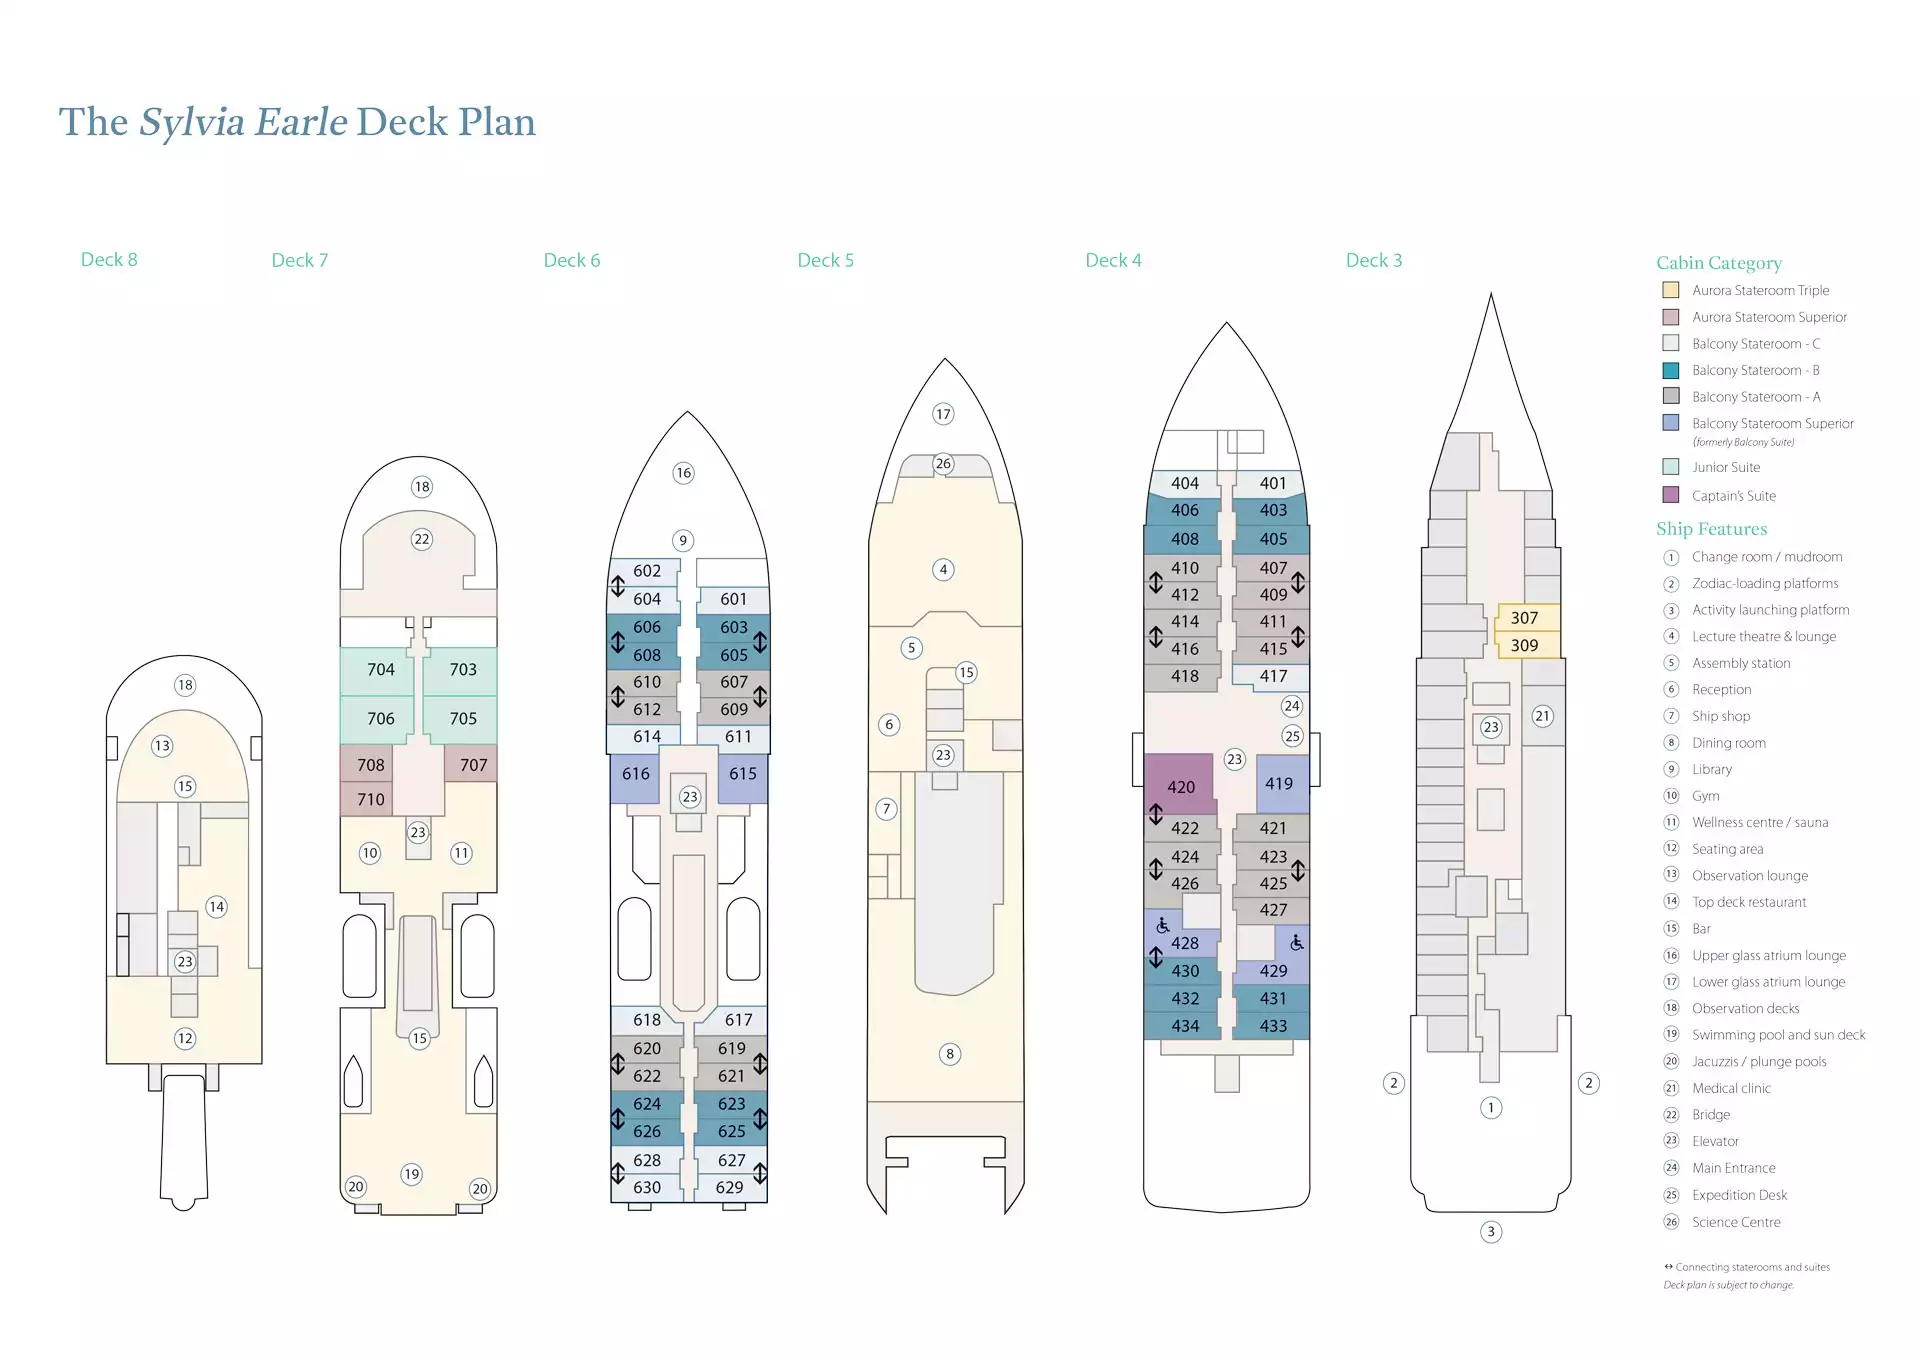 Deck plan of Sylvia Earle polar expedition ship, showing 77 cabins across Decks 3, 4, 6 & 7.